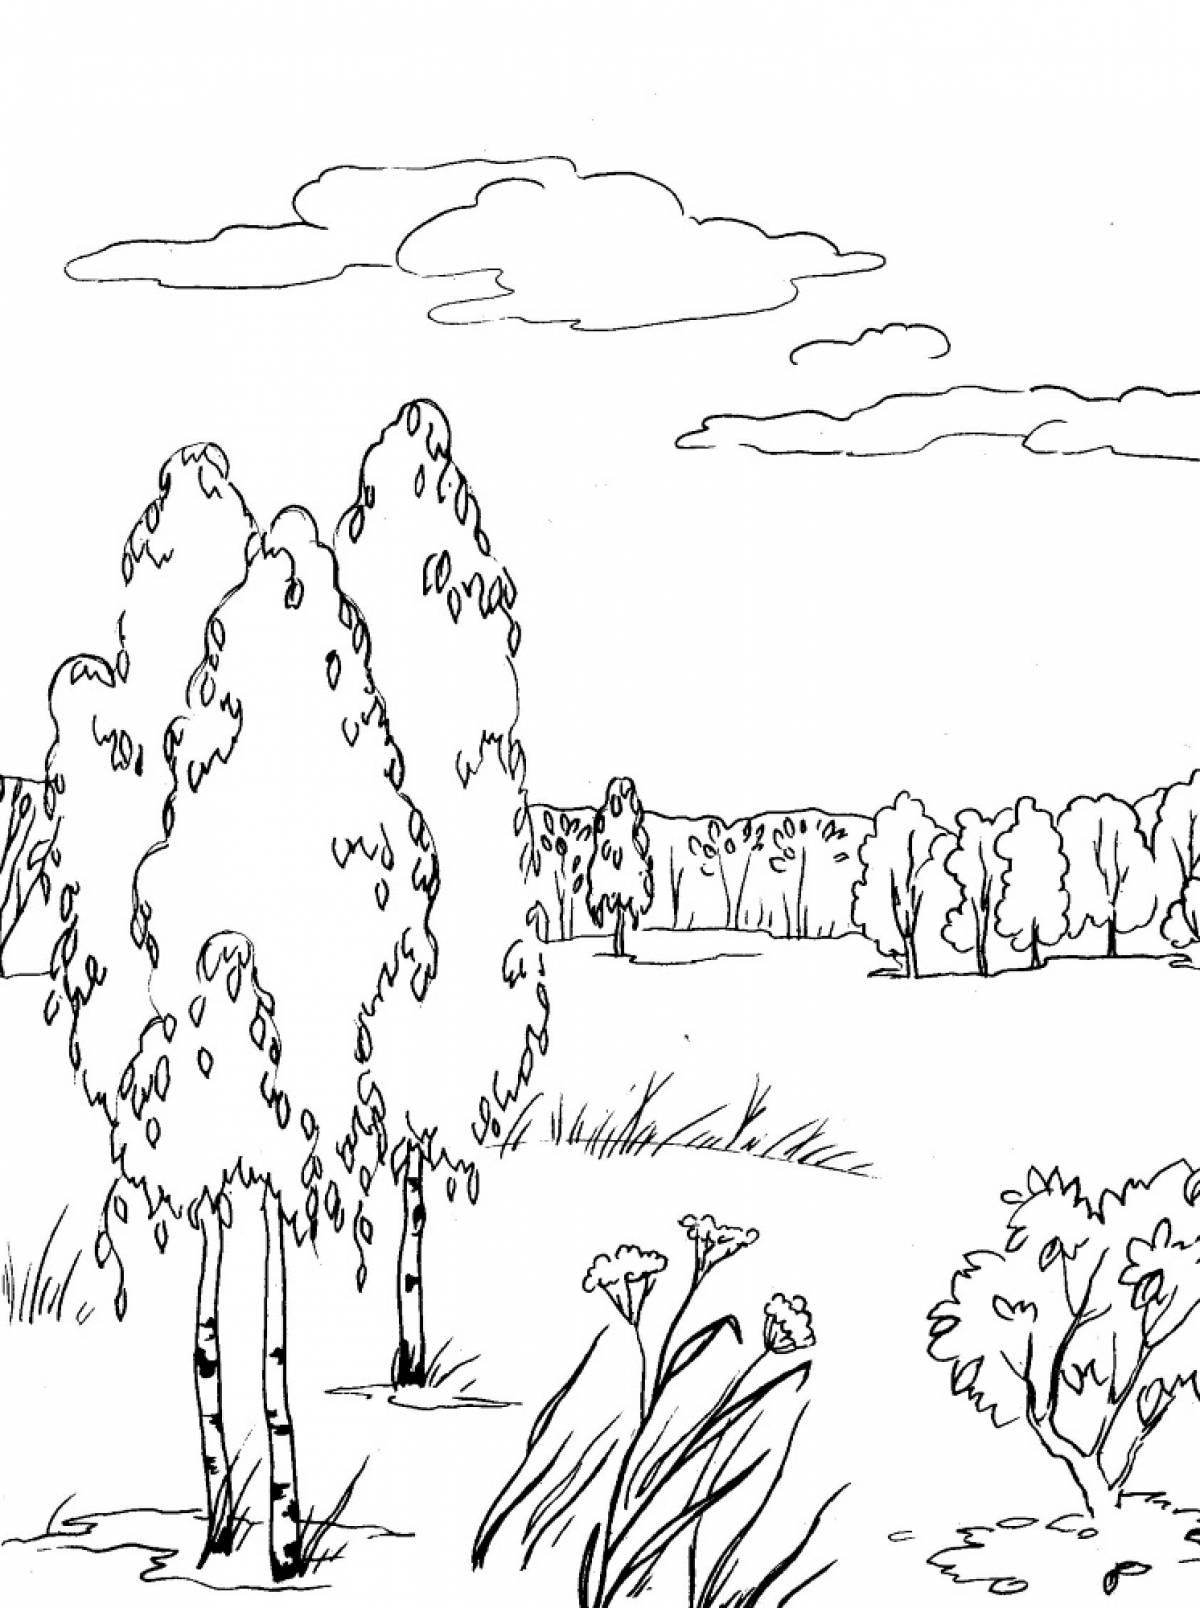 Summer landscape with birches